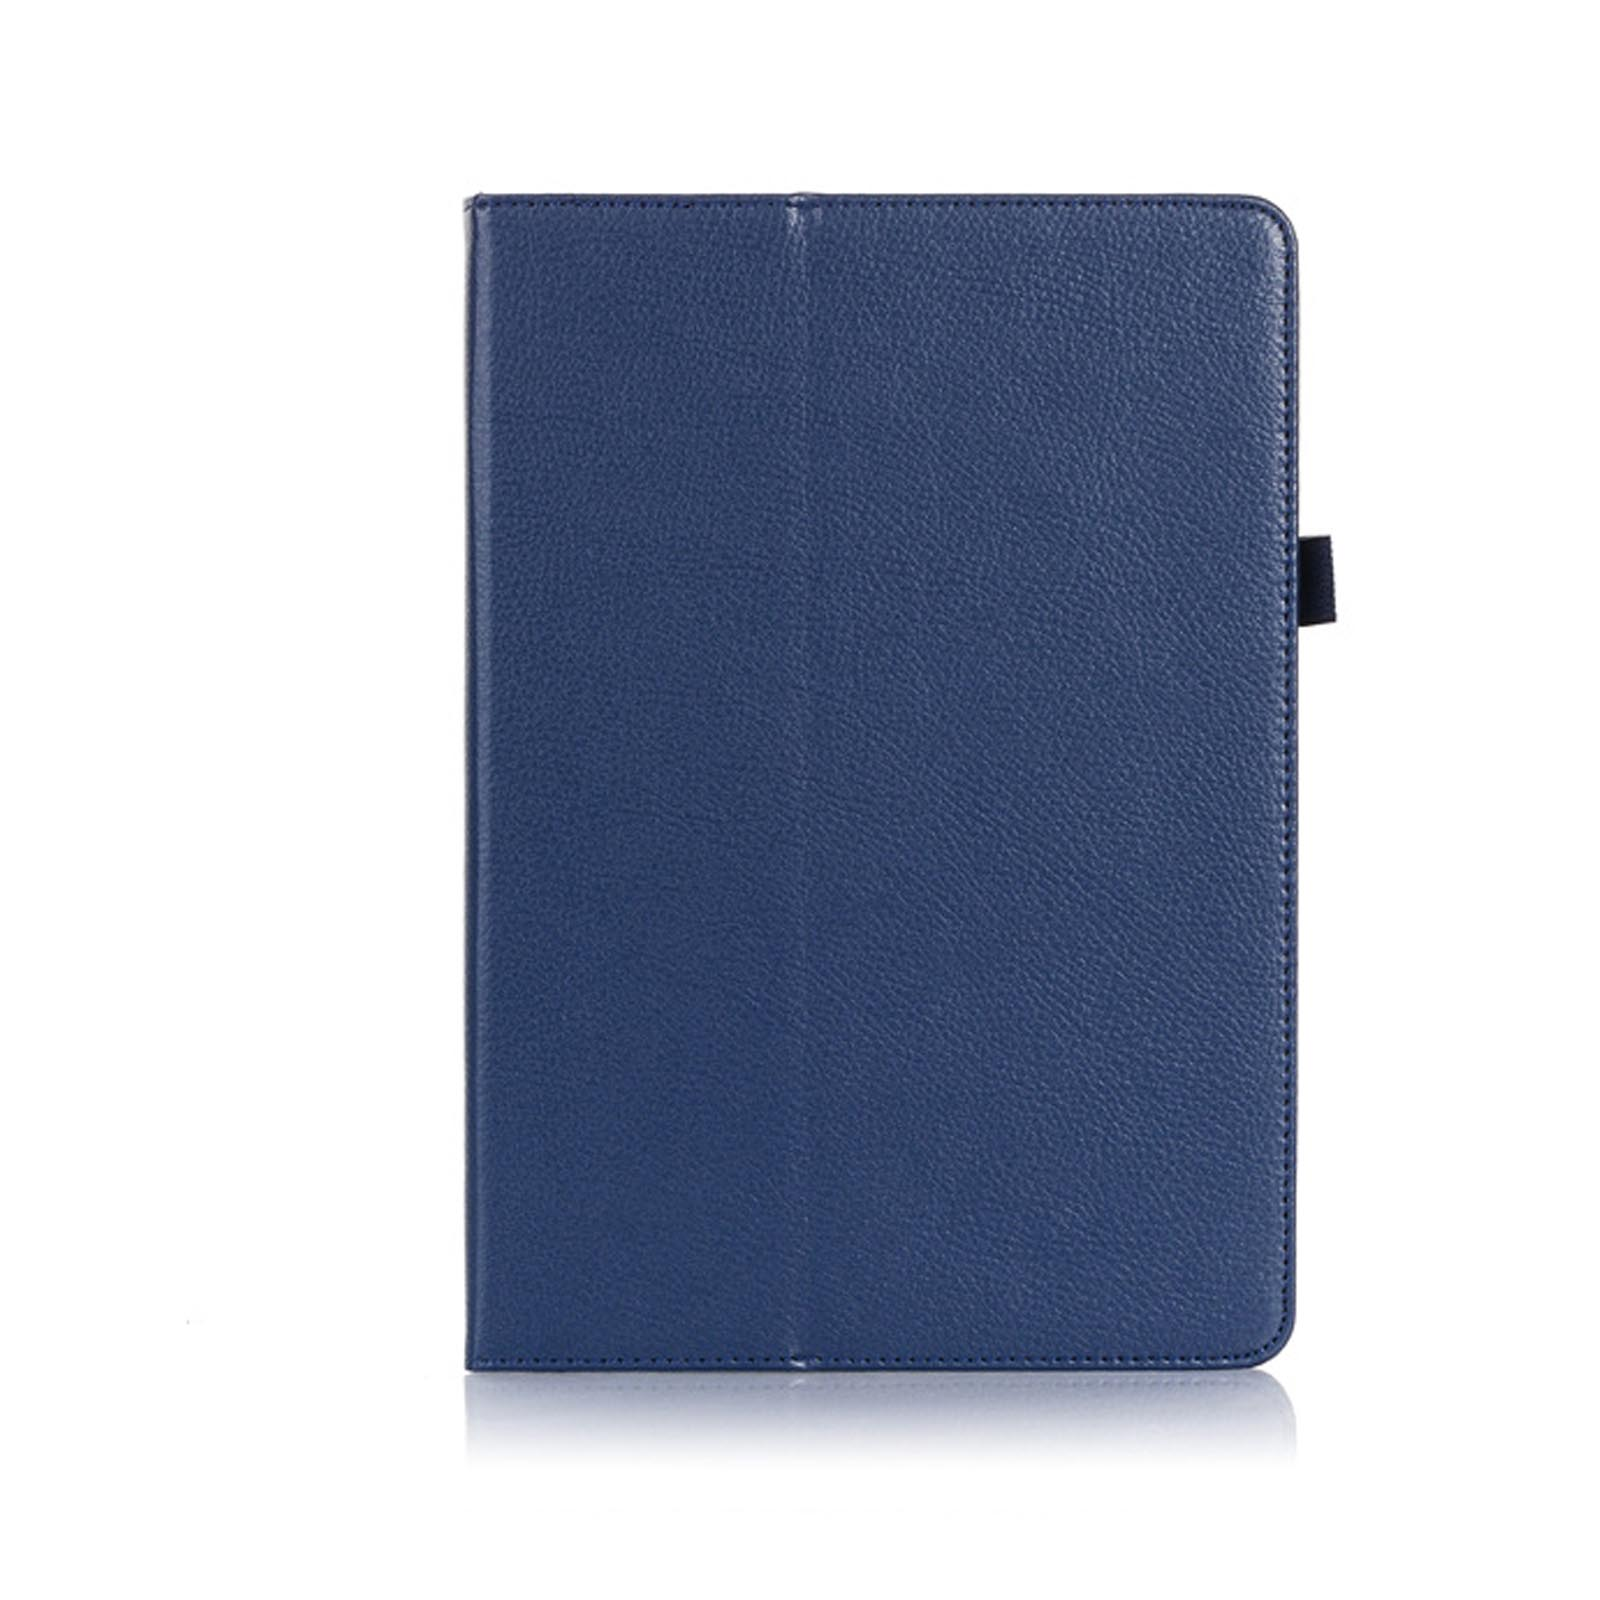 Blau Bookcover Hülle 10.2 2019/2020/2021 Schutzhülle Kunstleder, für iPad Apple LOBWERK Zoll